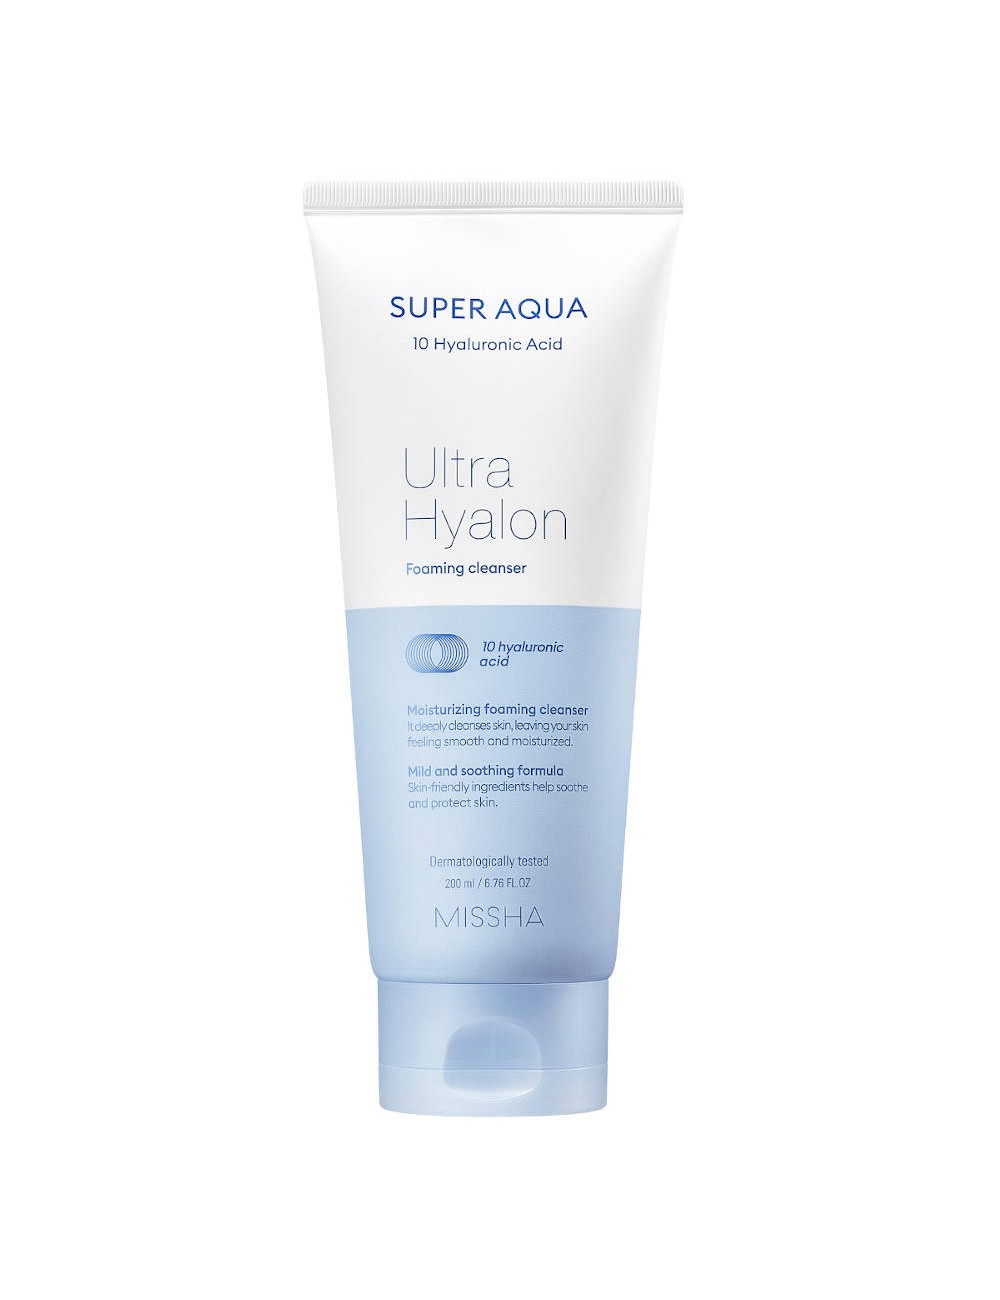 Espumas Limpiadoras al mejor precio: Super Aqua Ultra Hyalron Foaming Cleanser de Missha en Skin Thinks - Piel Seca